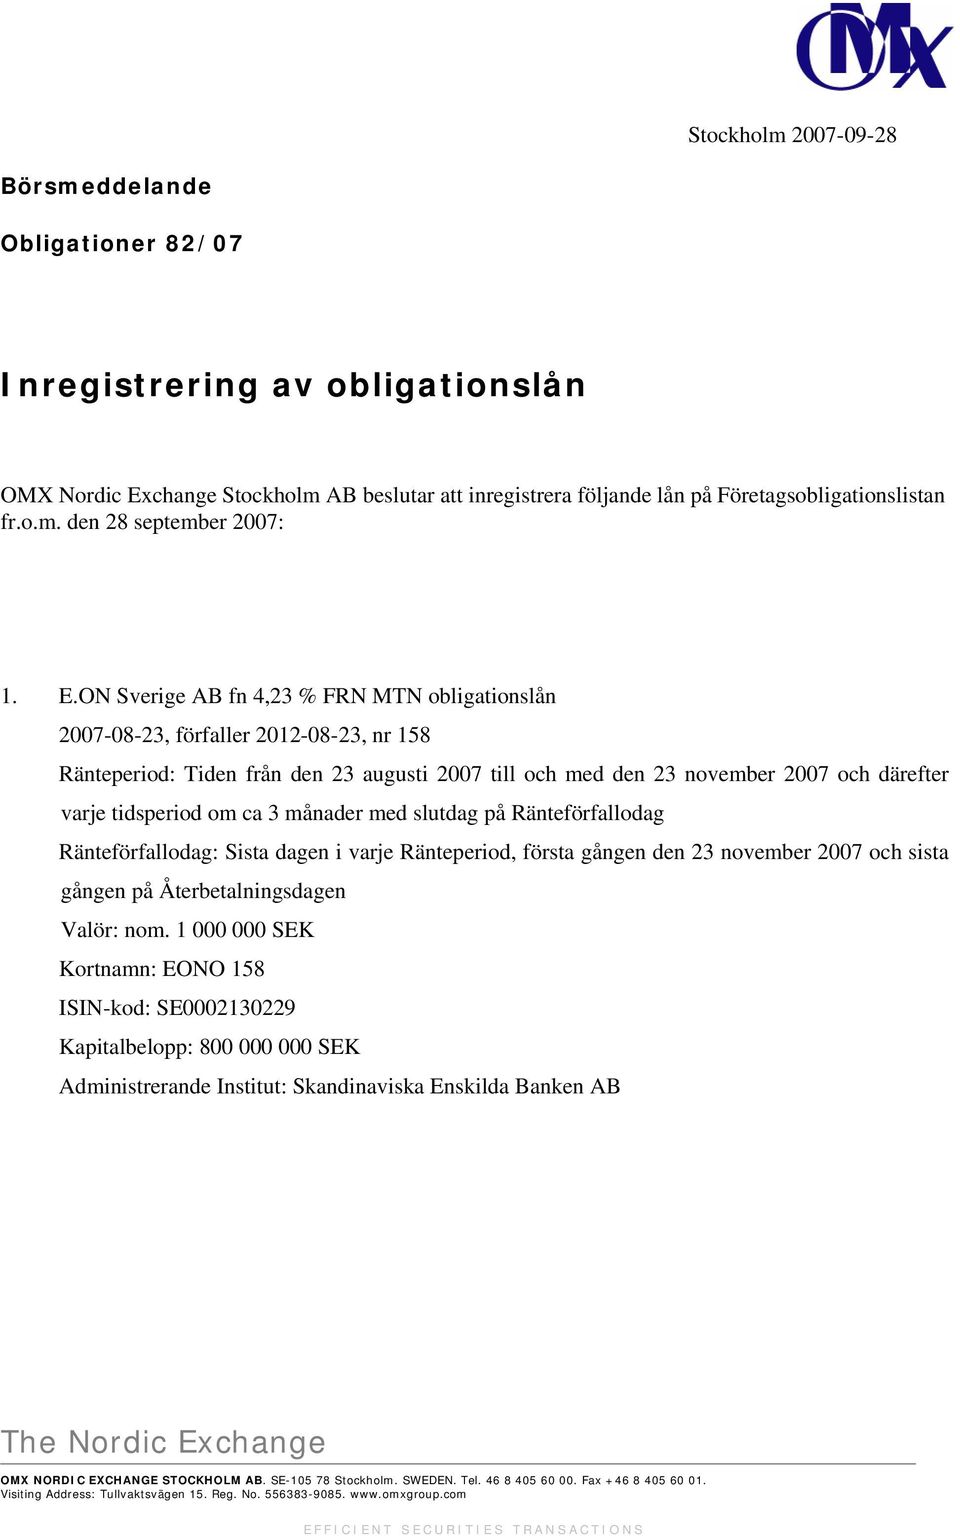 ON Sverige AB fn 4,23 % FRN MTN obligationslån 2007-08-23, förfaller 2012-08-23, nr 158 Ränteperiod: Tiden från den 23 augusti 2007 till och med